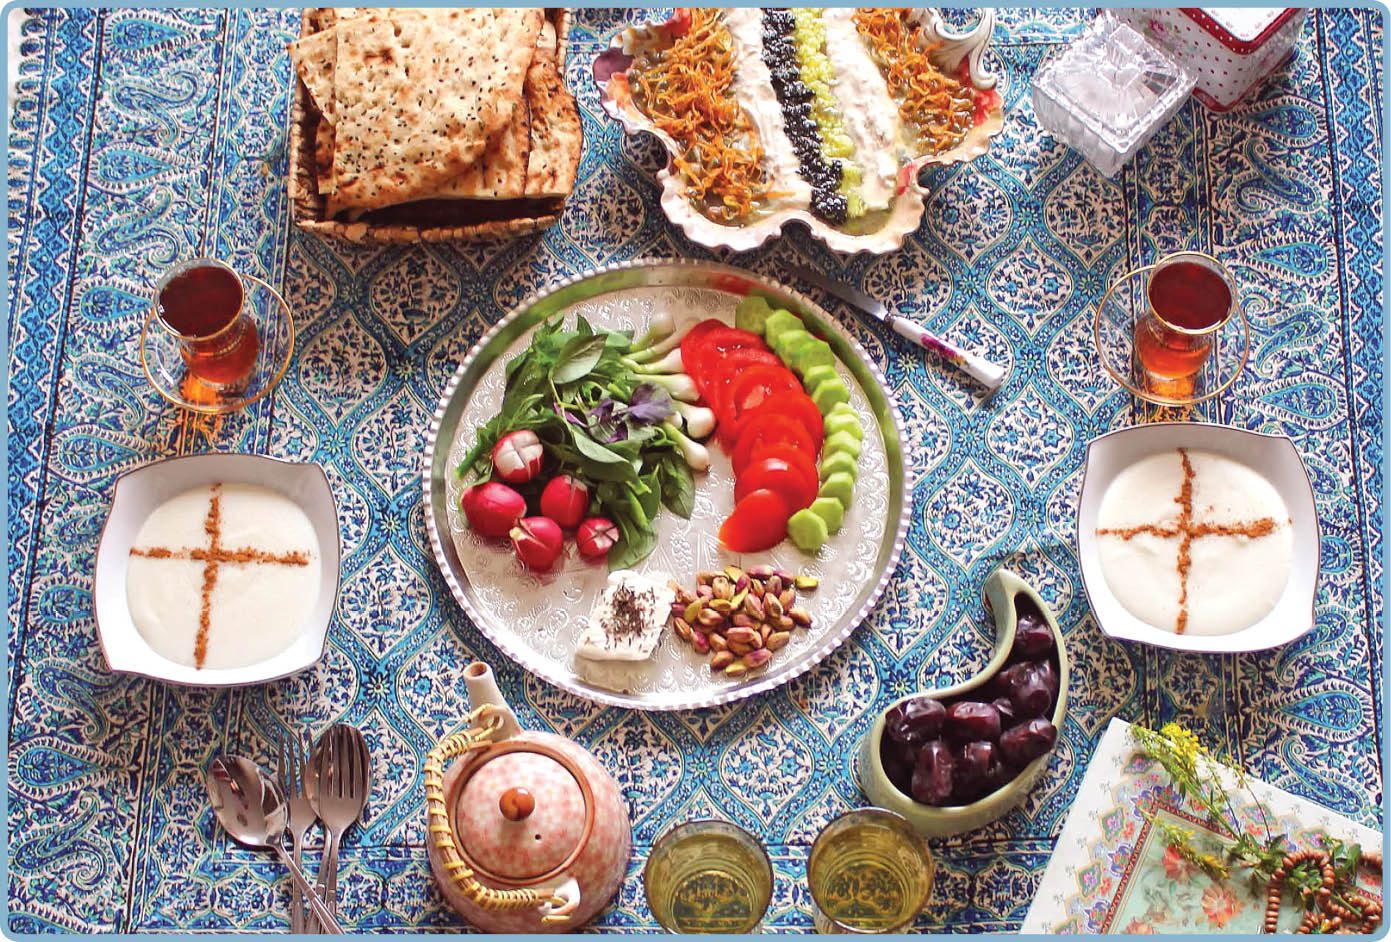 باید ها و نباید های تغذیه ای در ماه رمضان محصولات سالم